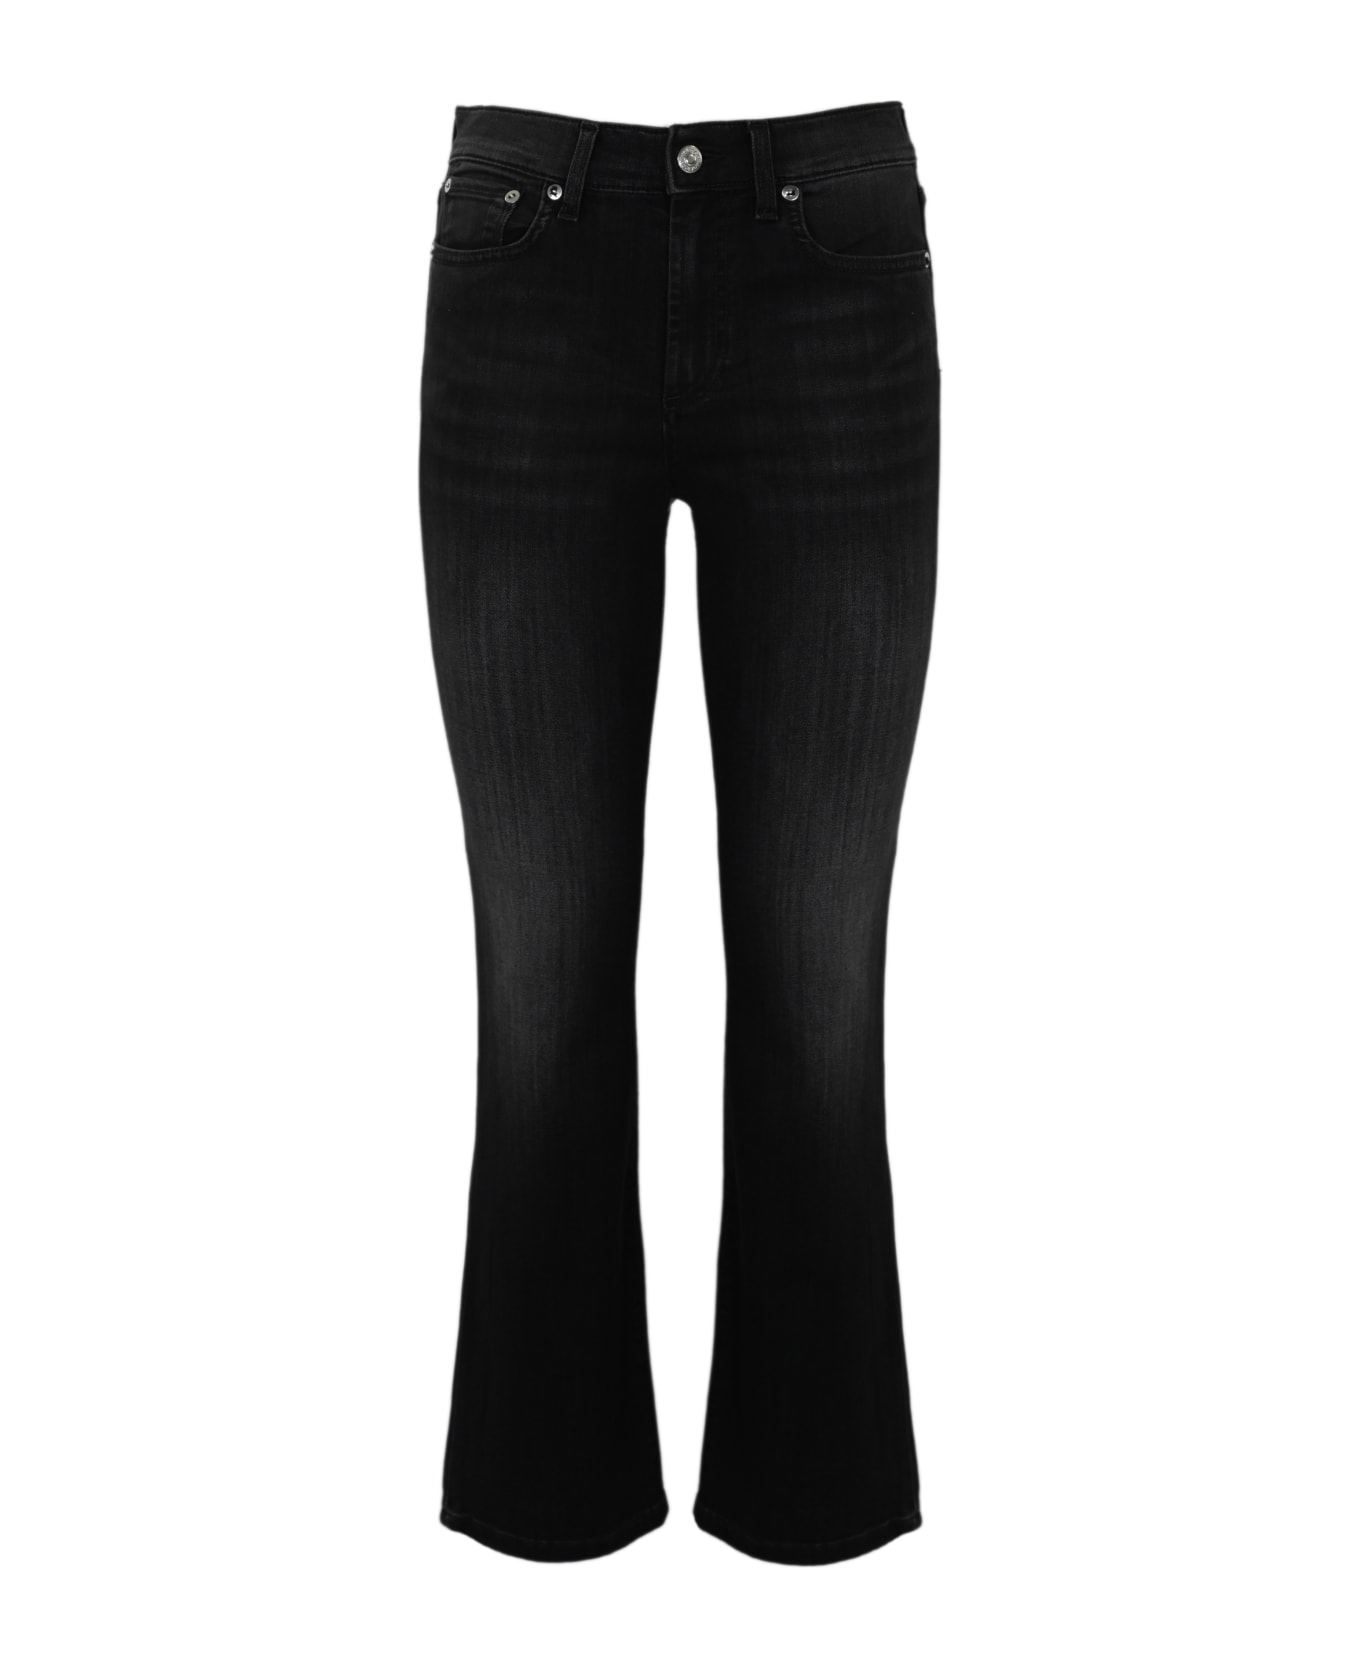 Roy Rogers Flare Jeans In Black Denim - Denim black ボトムス